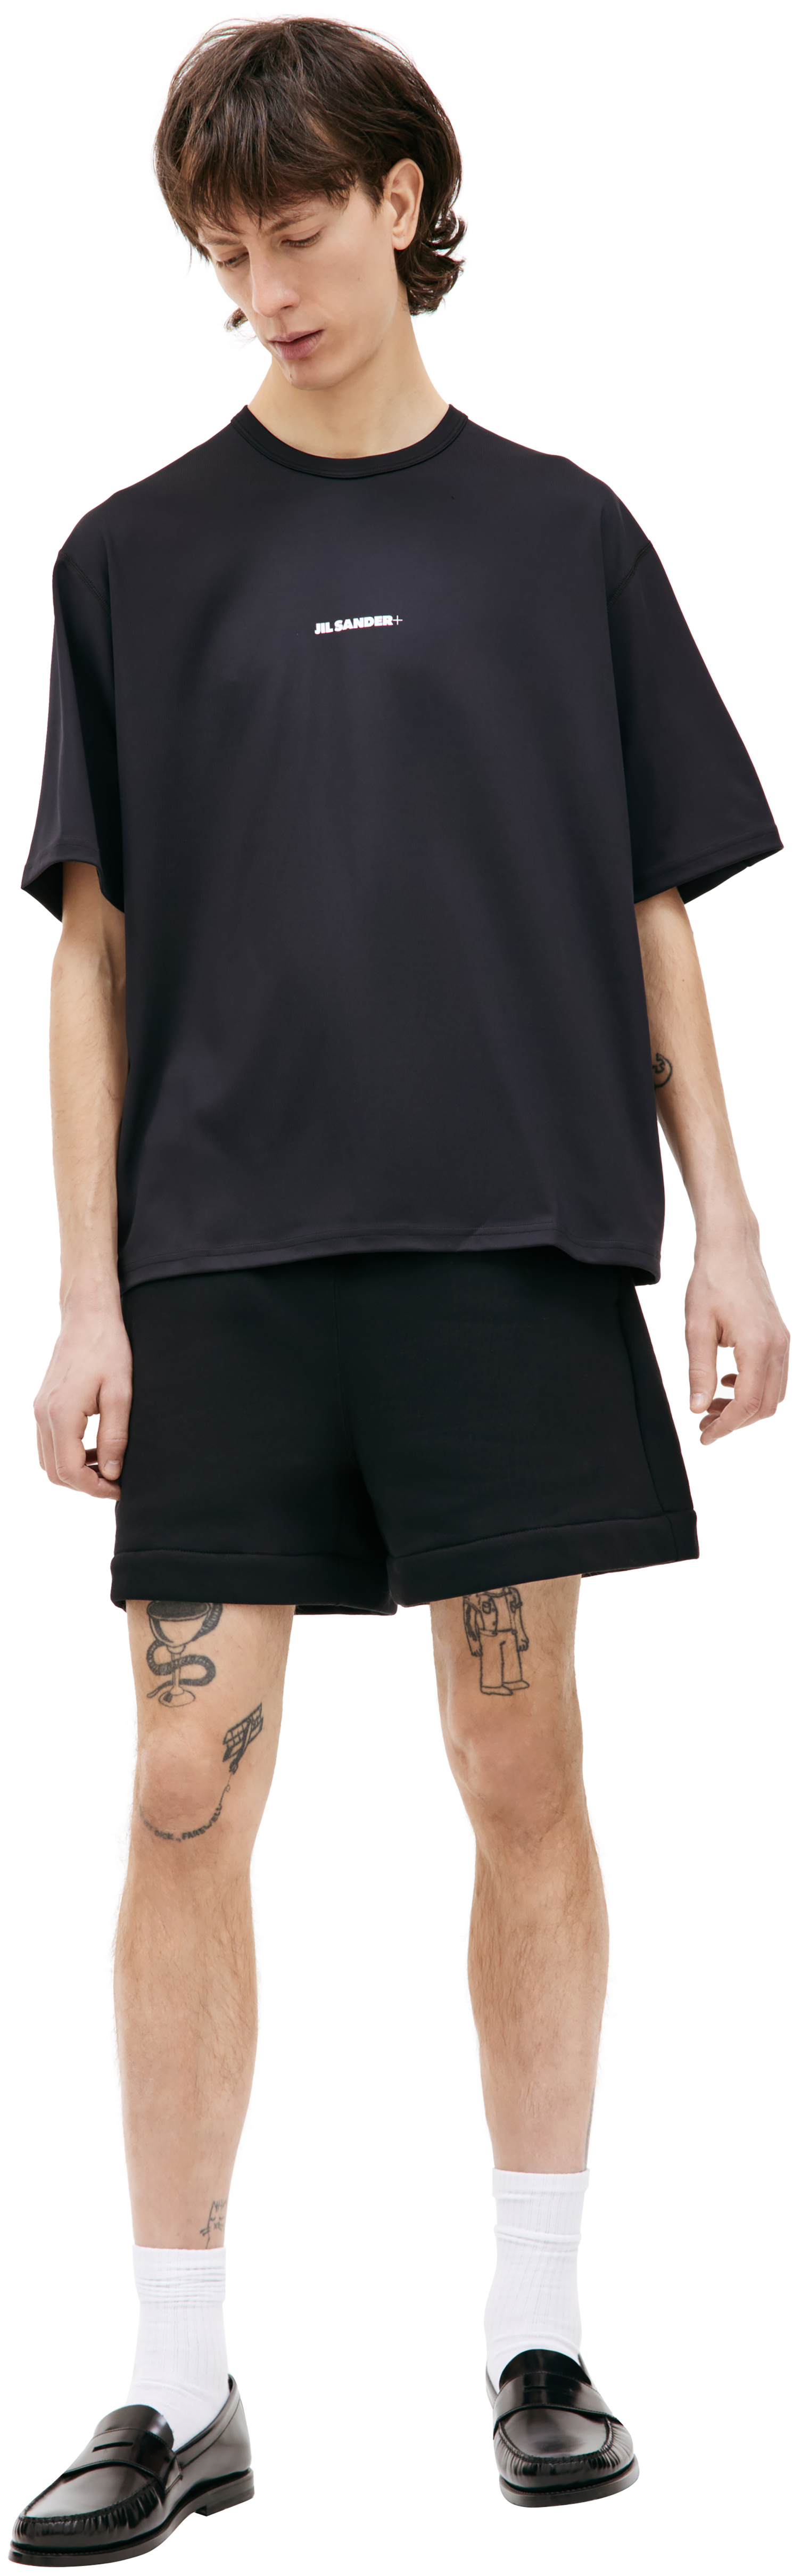 Jil Sander Оверсайз футболка с логотипом